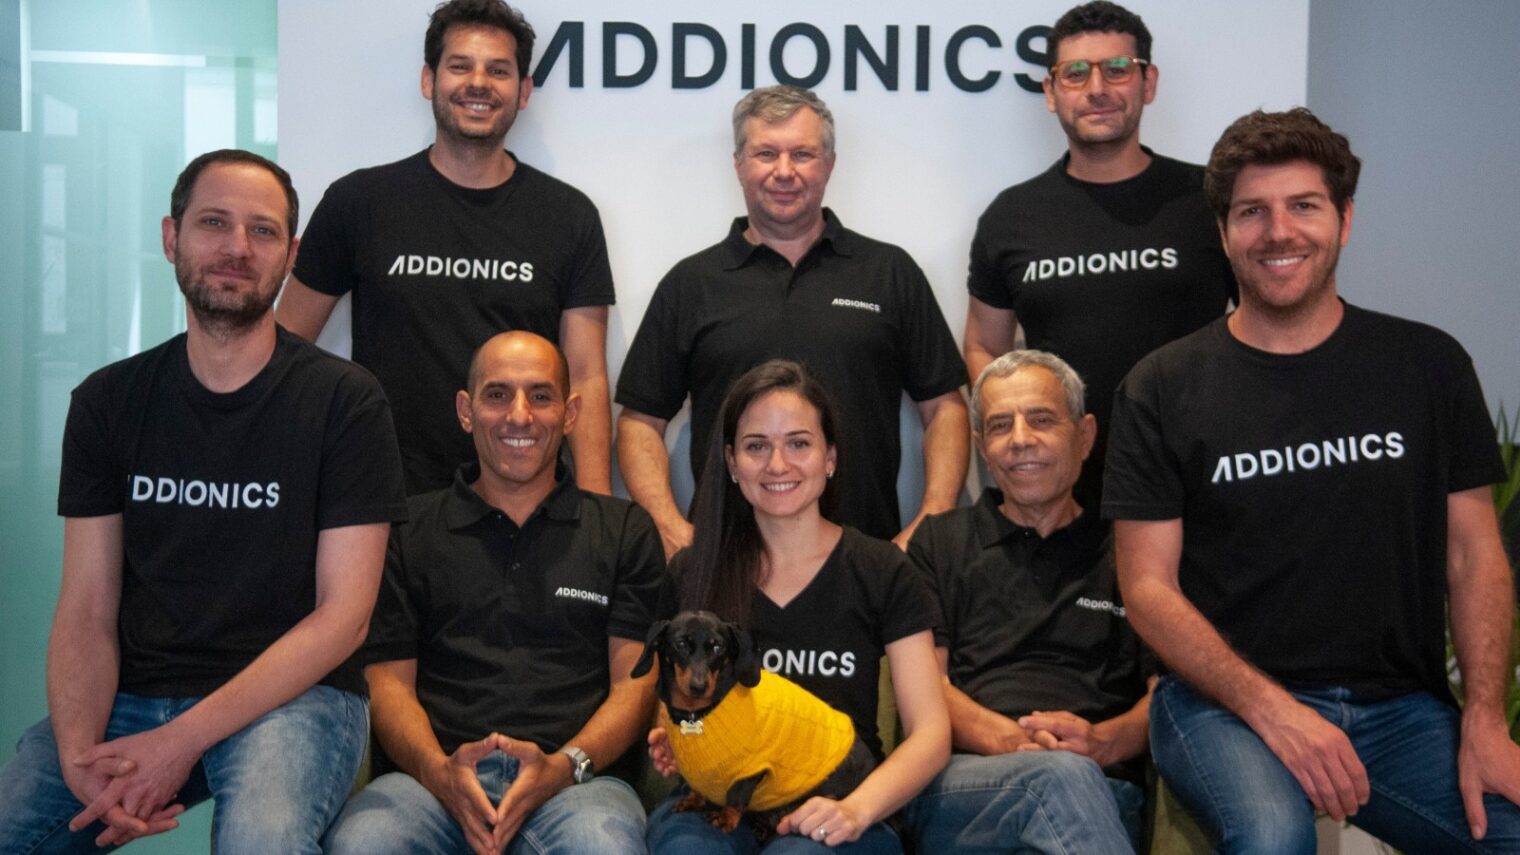 The Addionics team. Photo courtesy of Addionics